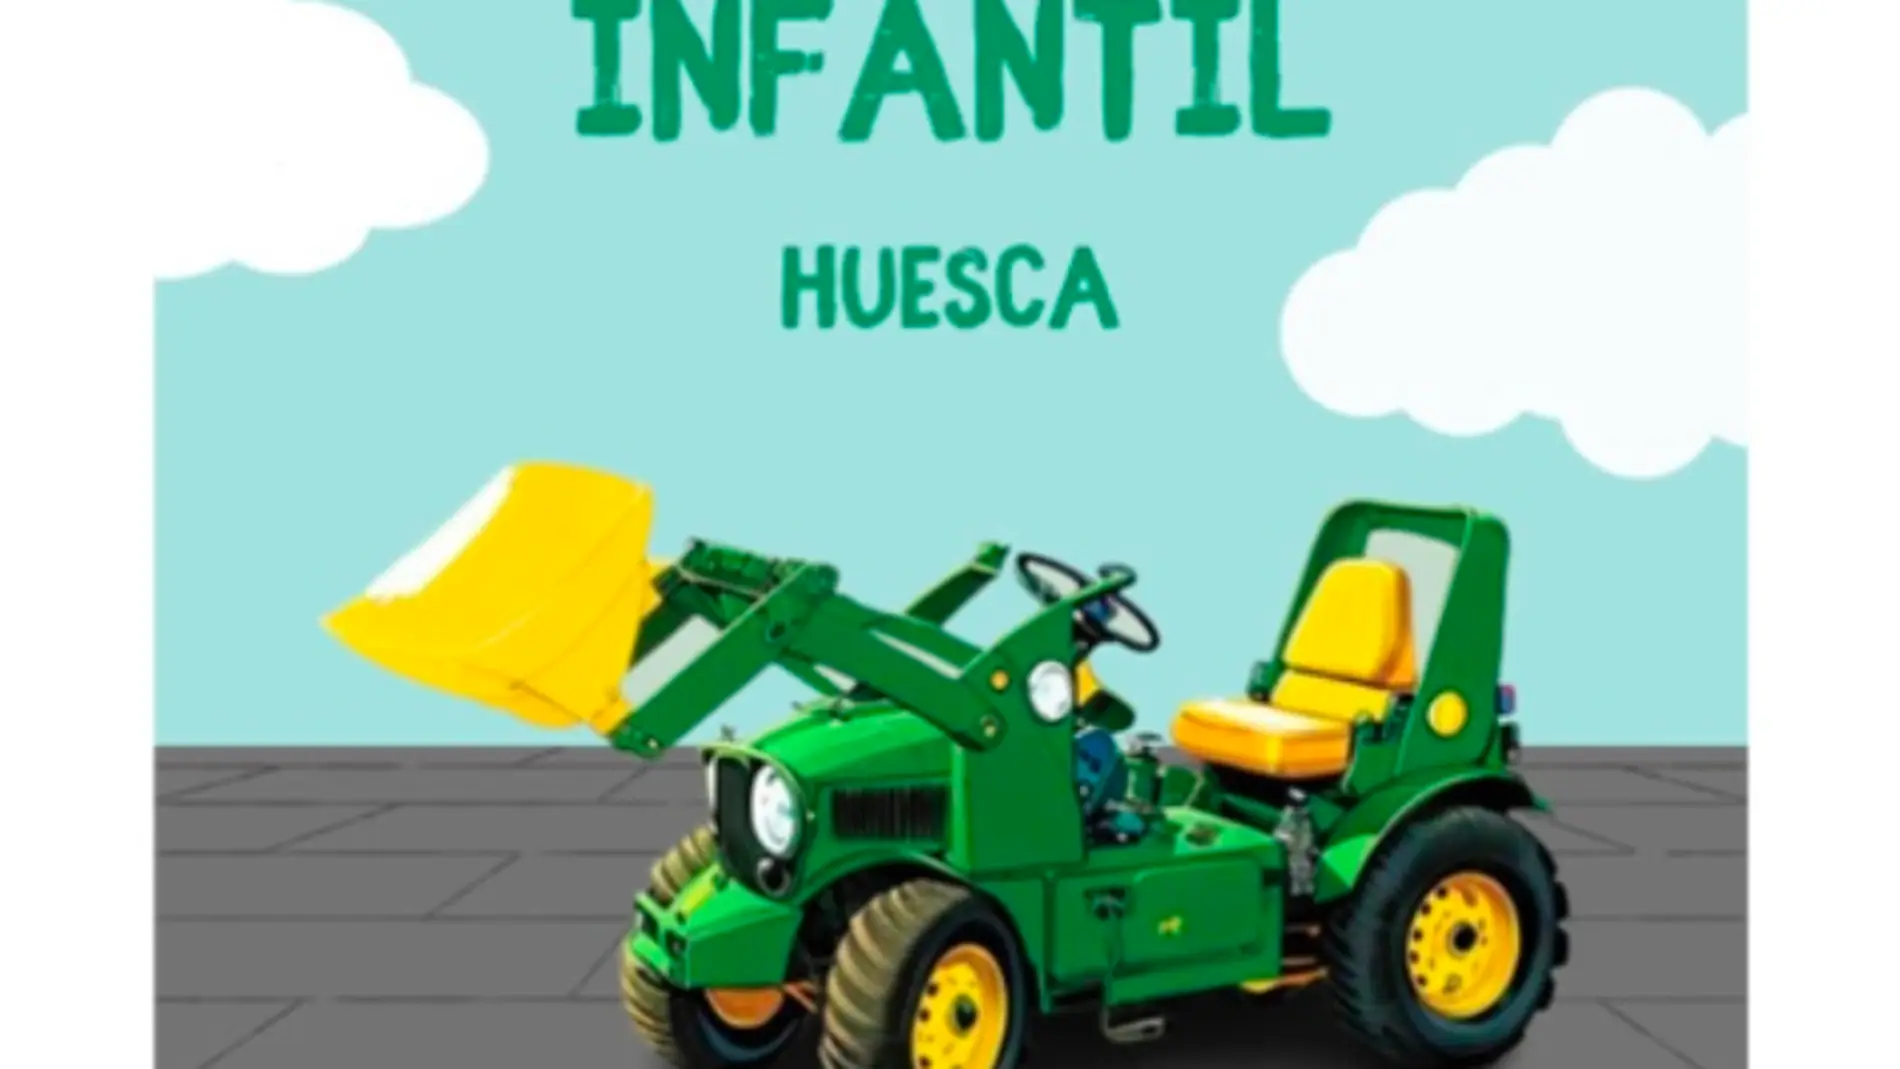 Tractorada infantil en Huesca en apoyo al sector primario